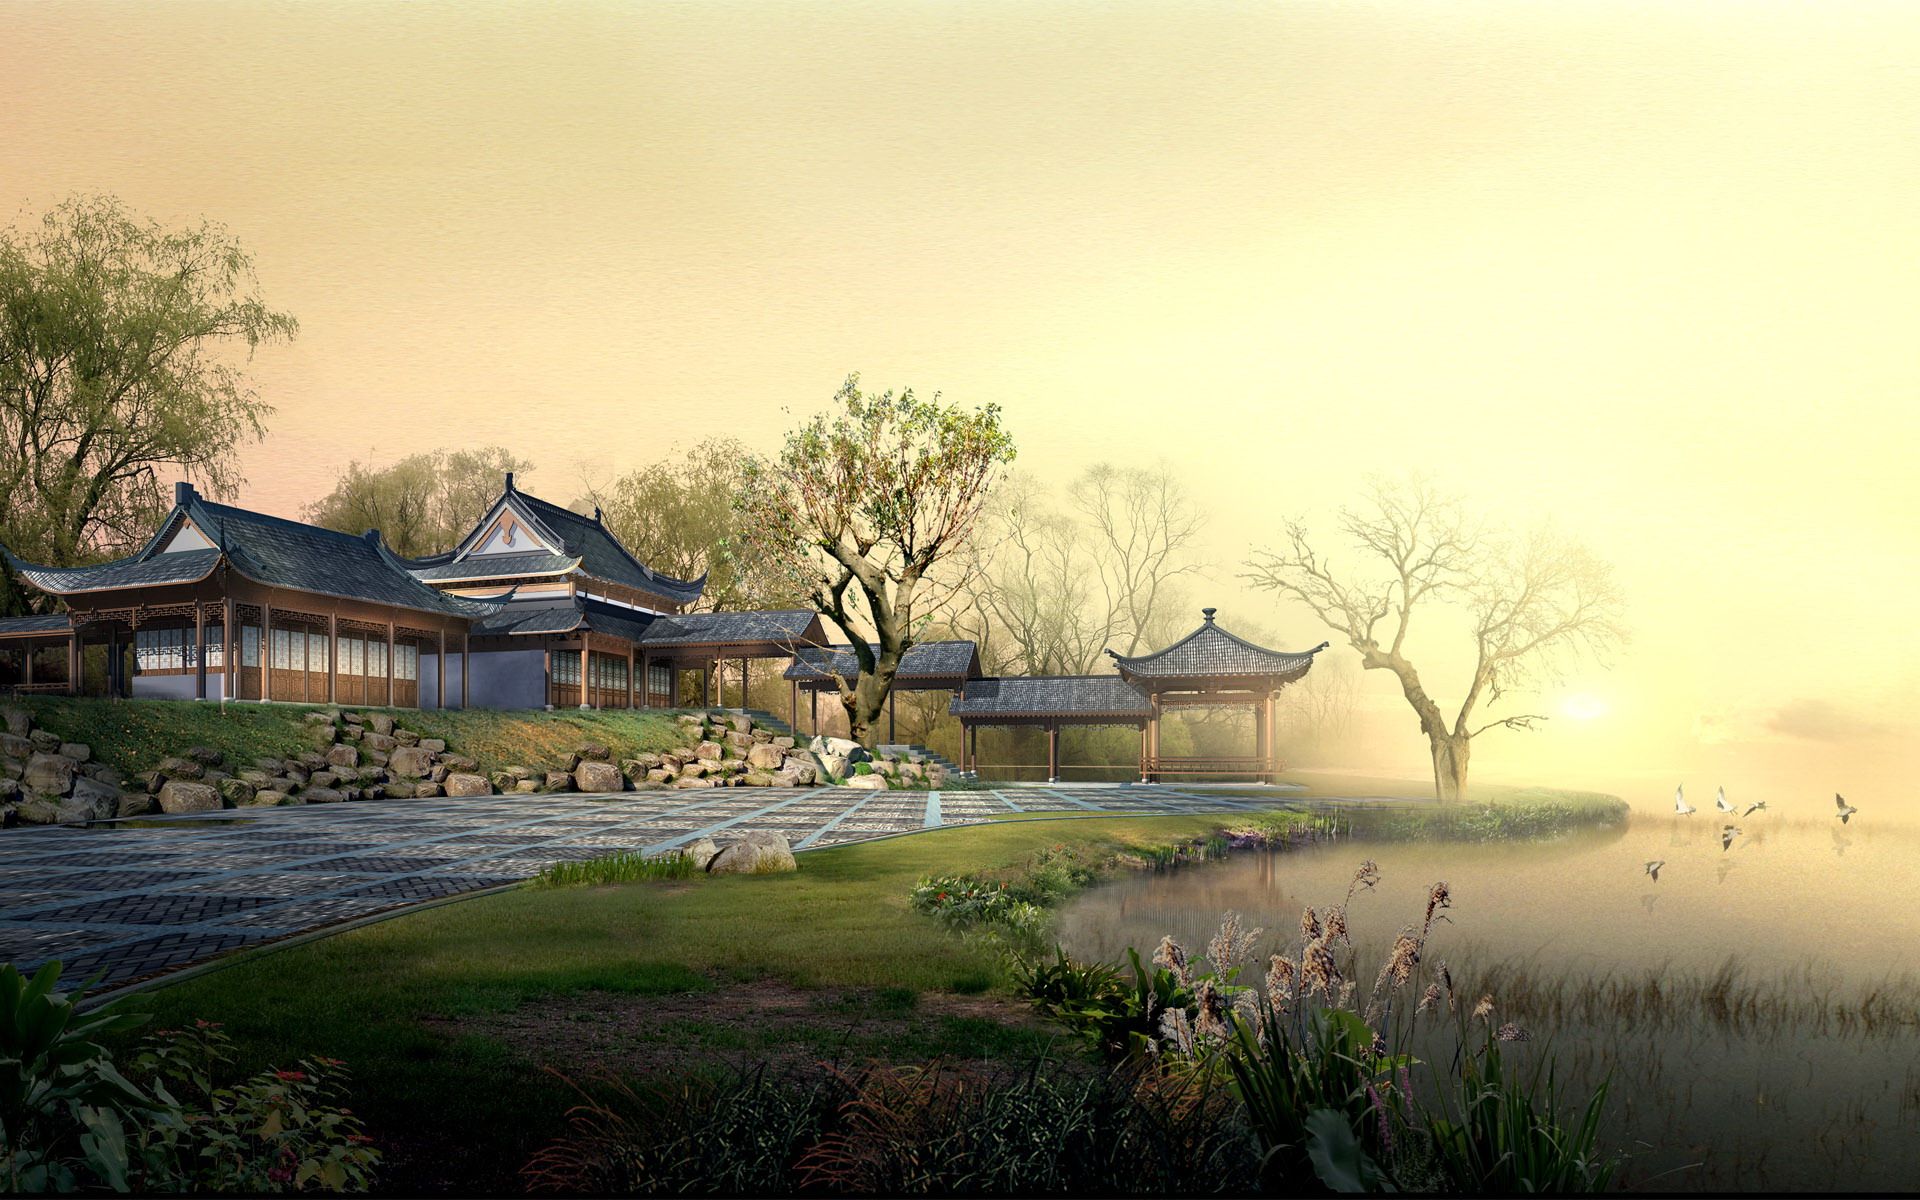 Tranh cảnh Trung Quốc cổ: Một bức tranh tuyệt đẹp, tái hiện cuộc sống và phong cảnh Trung Quốc thời cổ đại. Từ một con phố nhỏ đến đền đài lấp lánh, từ ngọn núi đến những tòa thành cổ, hình ảnh sẽ khiến bạn cảm thấy như mình đang di chuyển trong một cuốn tiểu thuyết cổ điển Trung Hoa.